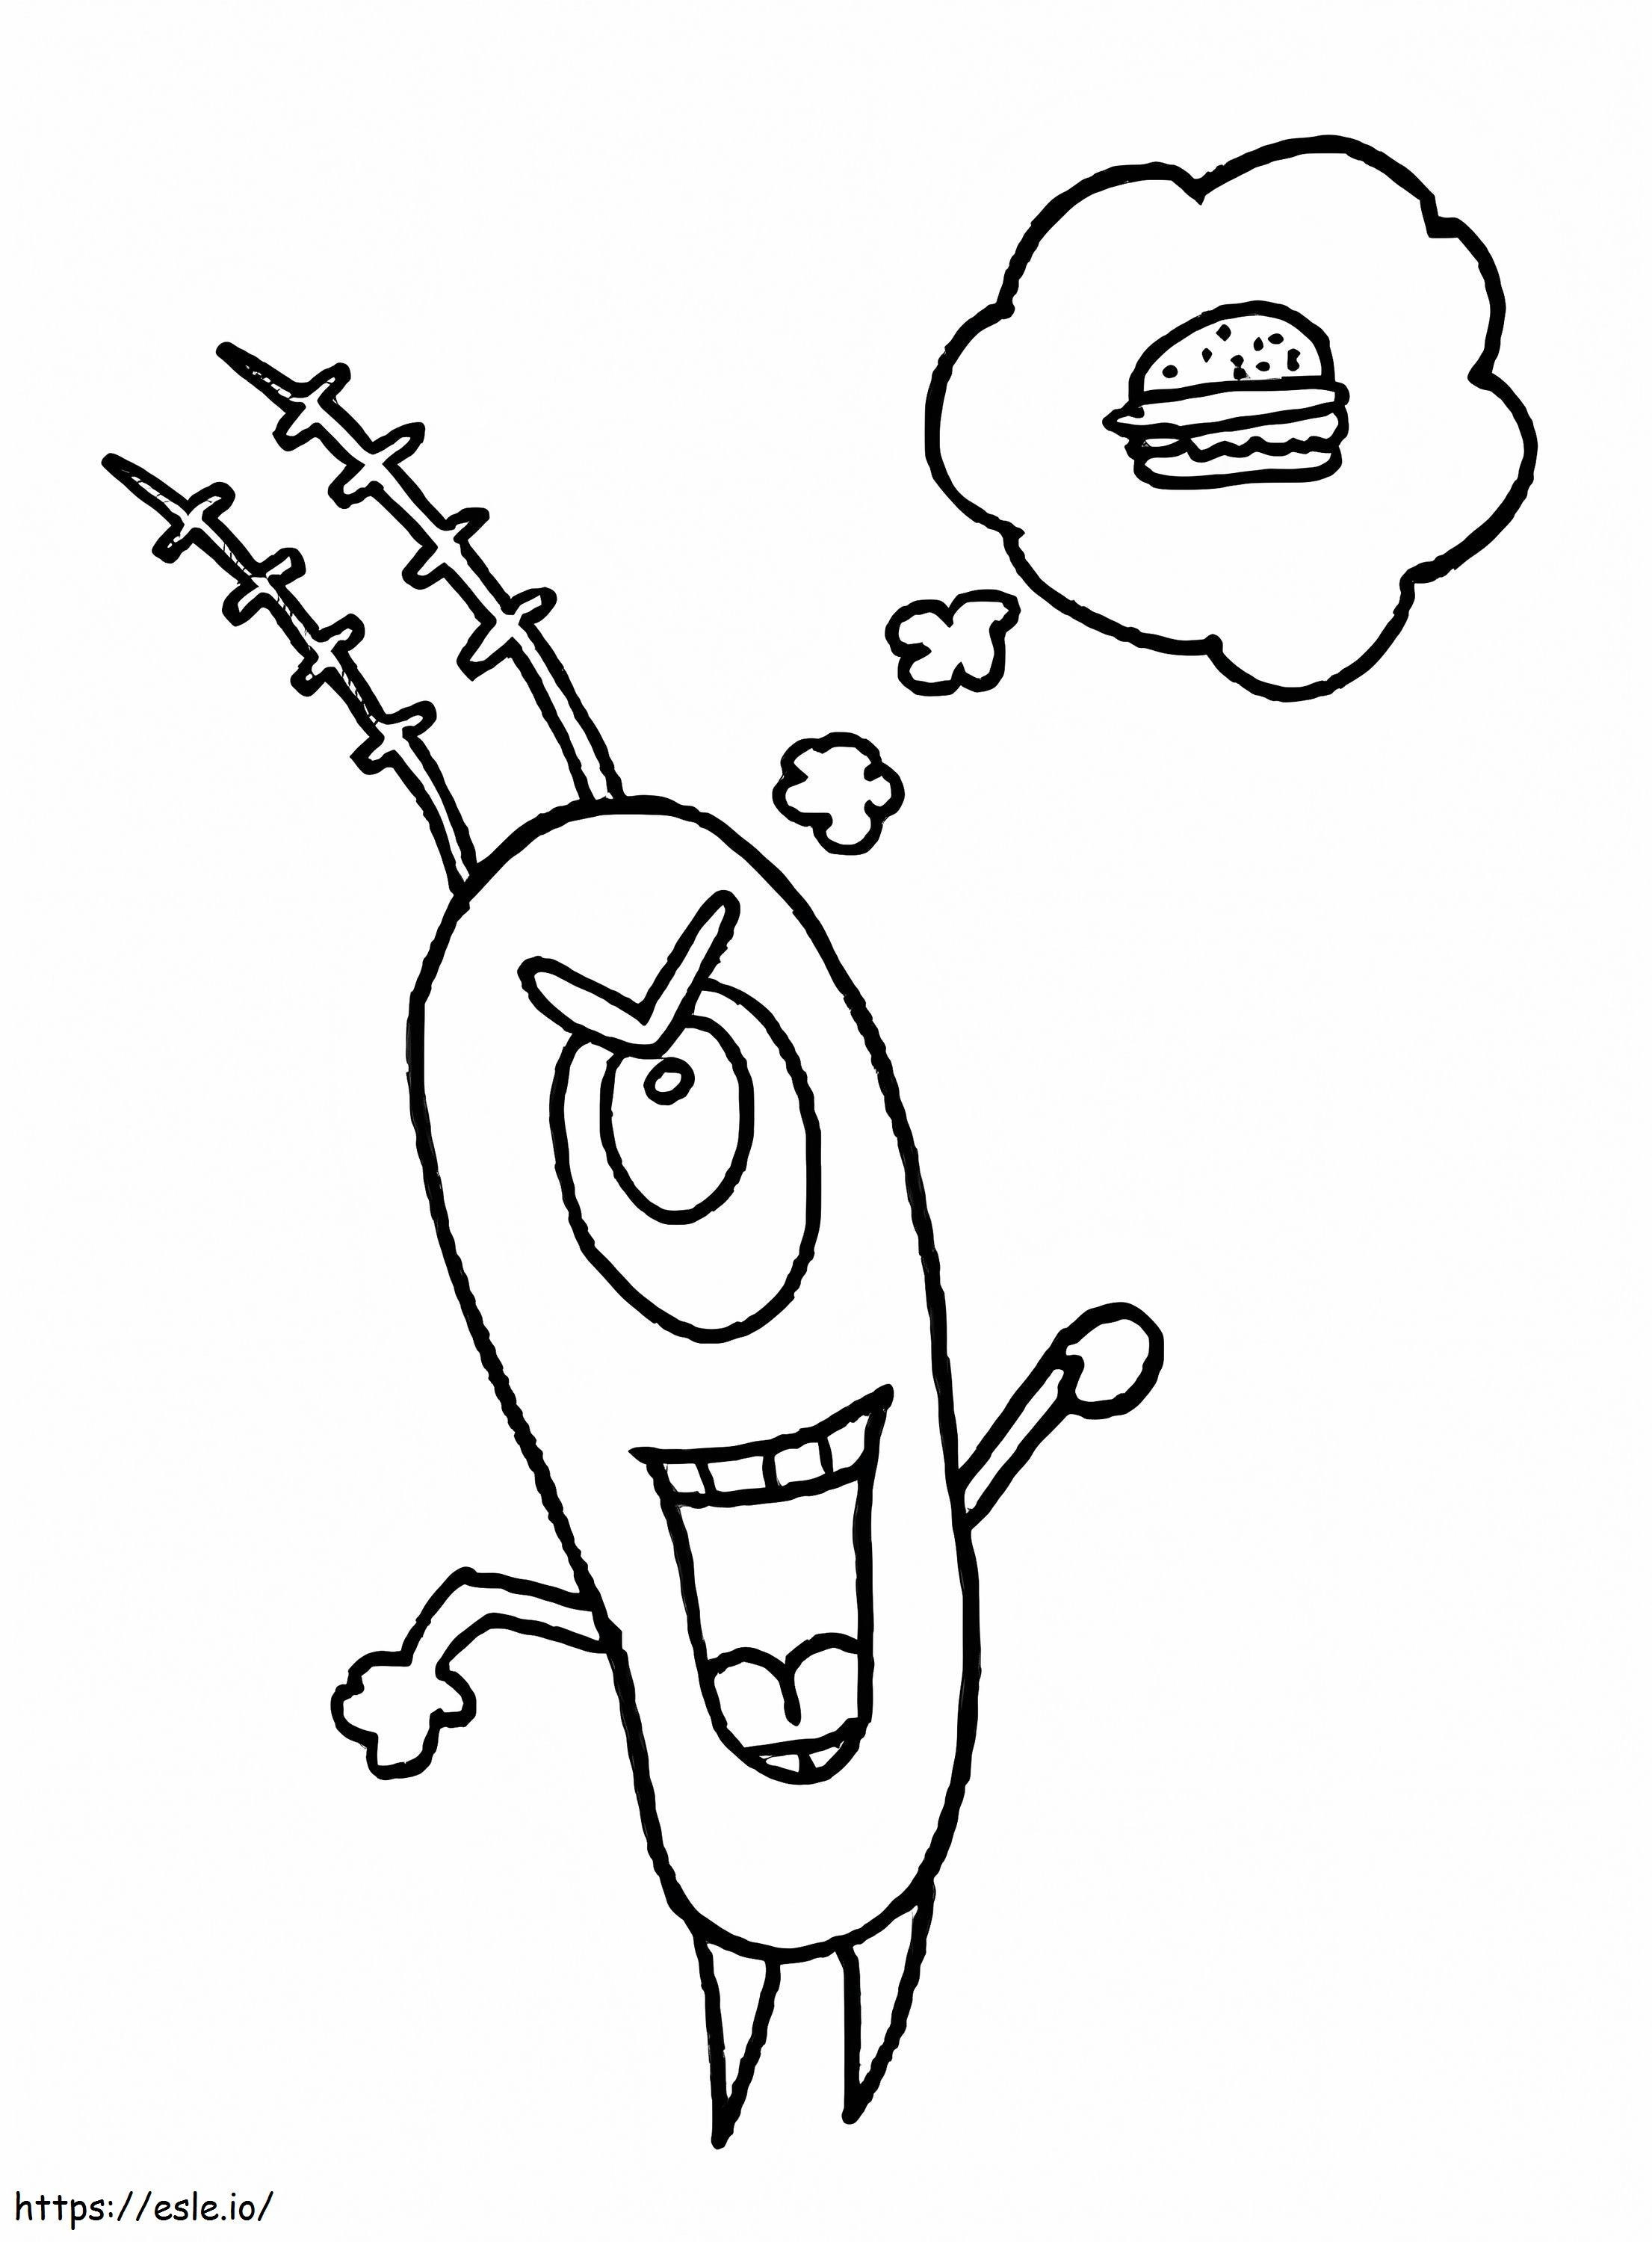 Plankton denkt über Hamburger nach ausmalbilder